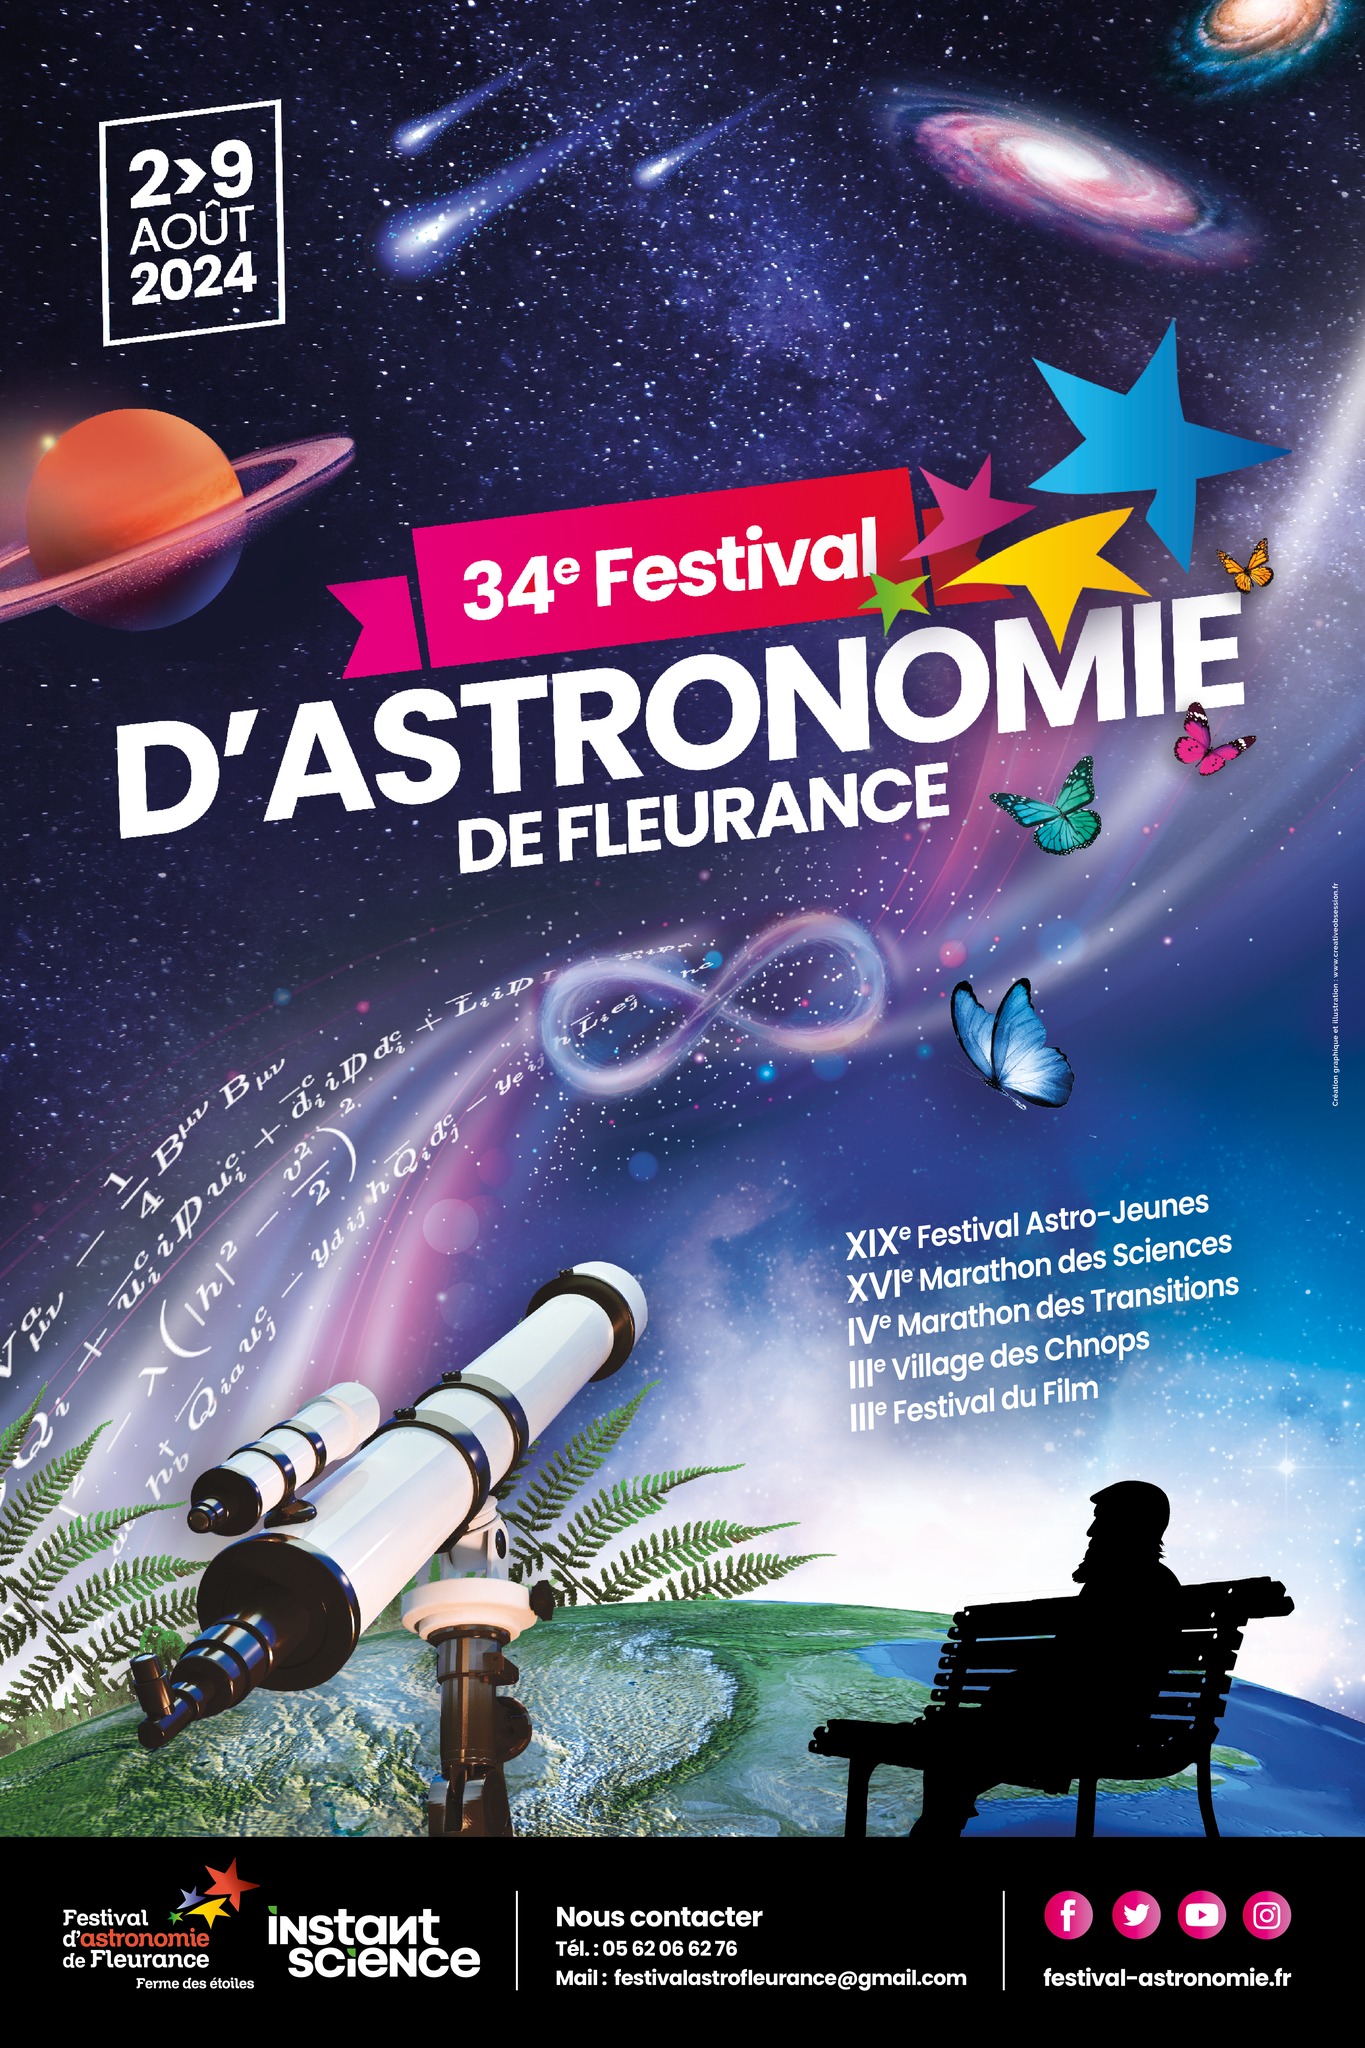 34ÈME FESTIVAL D'ASTRONOMIE DE FLEURANCE